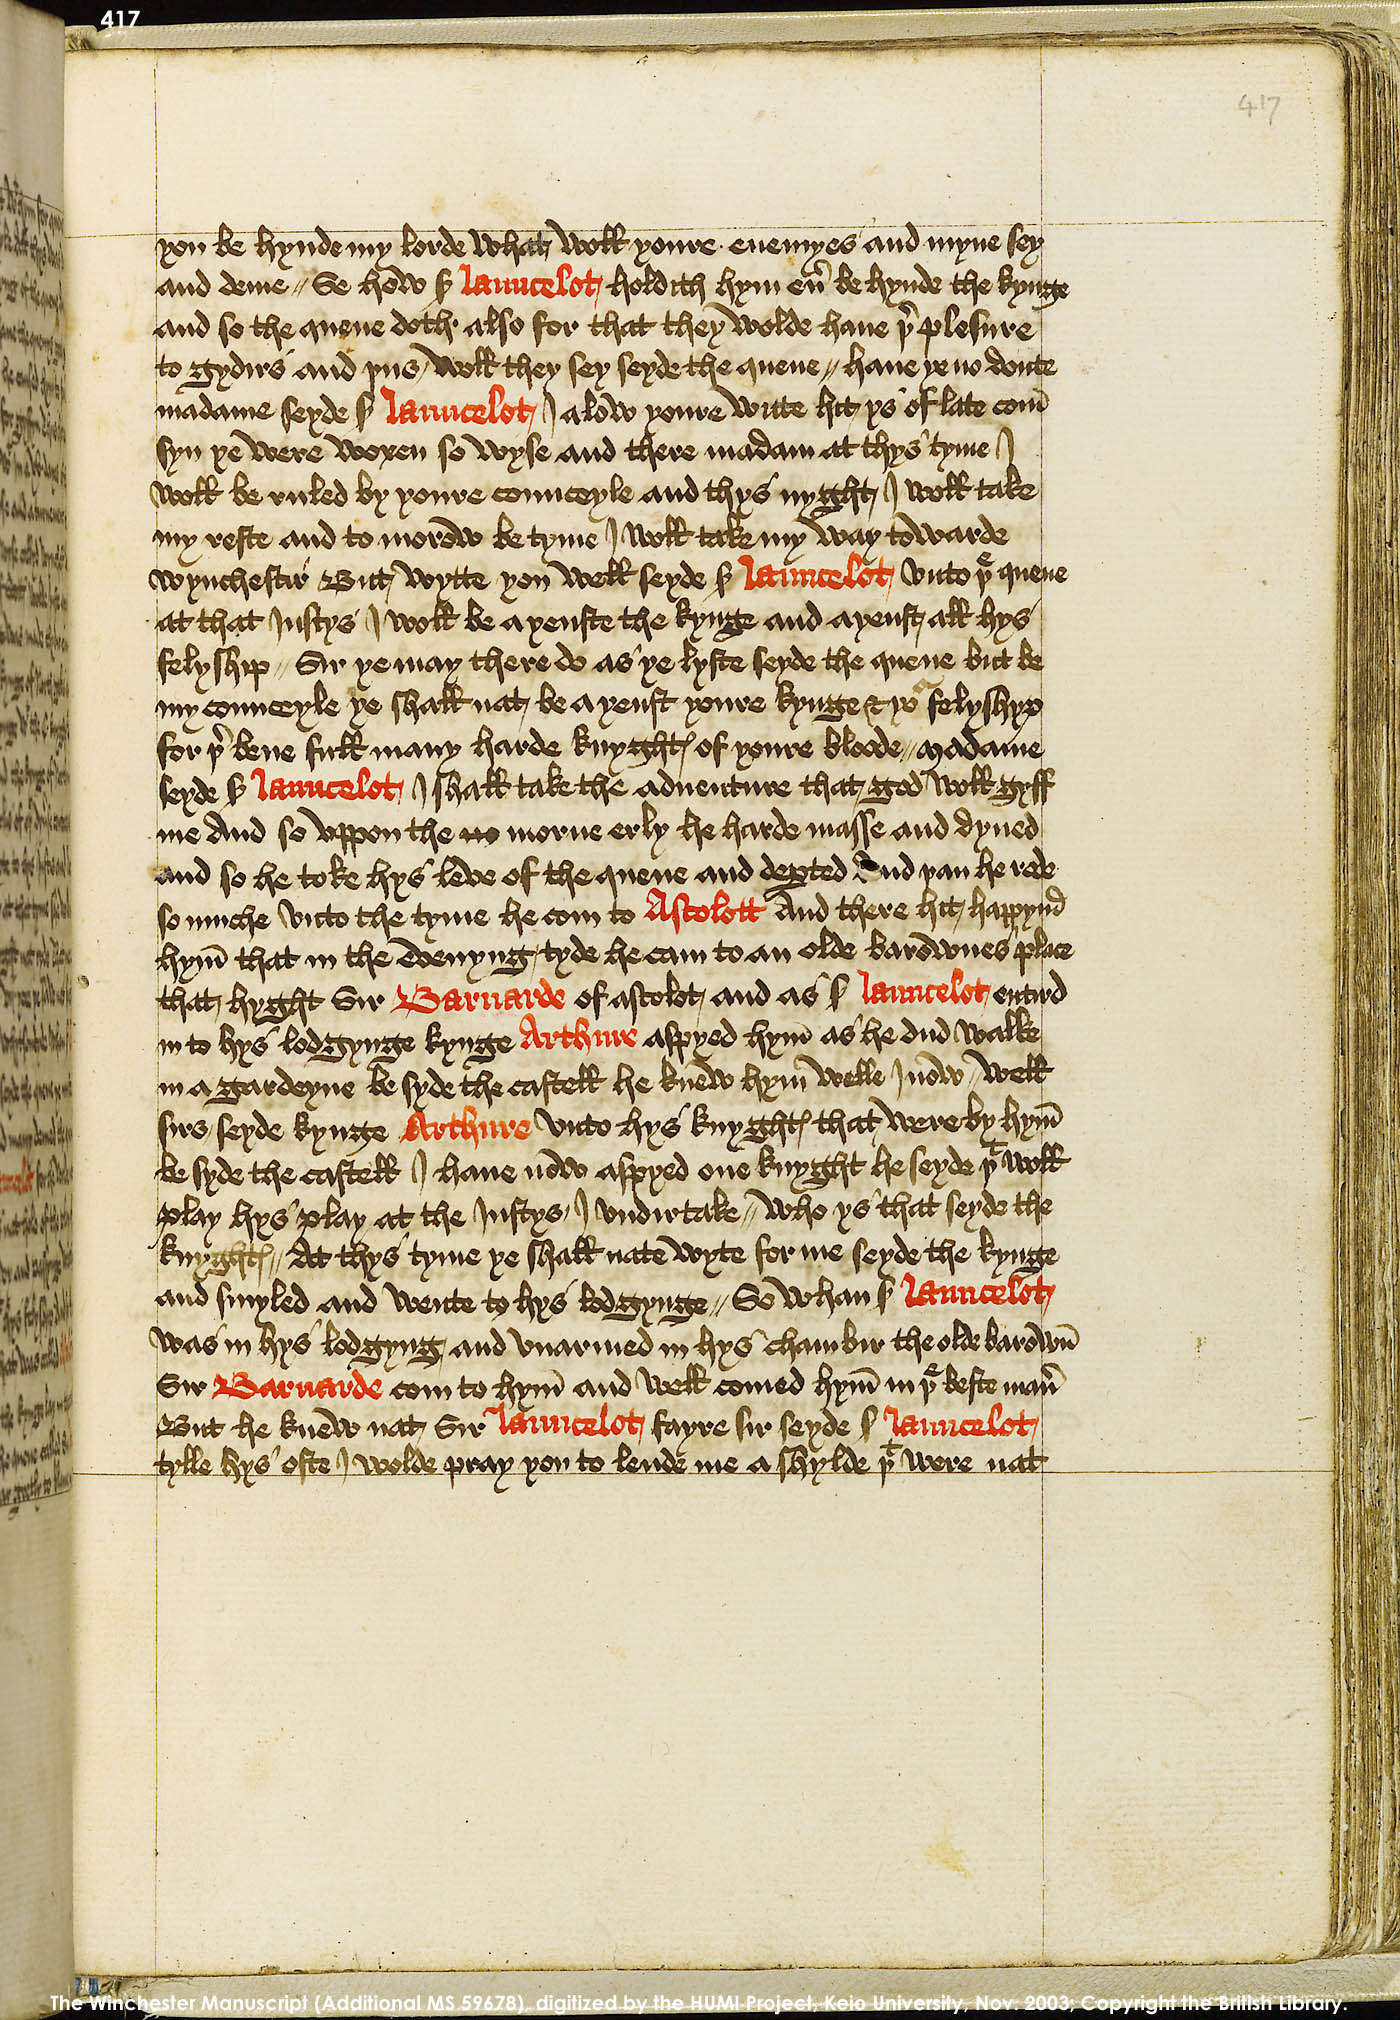 Folio 417r